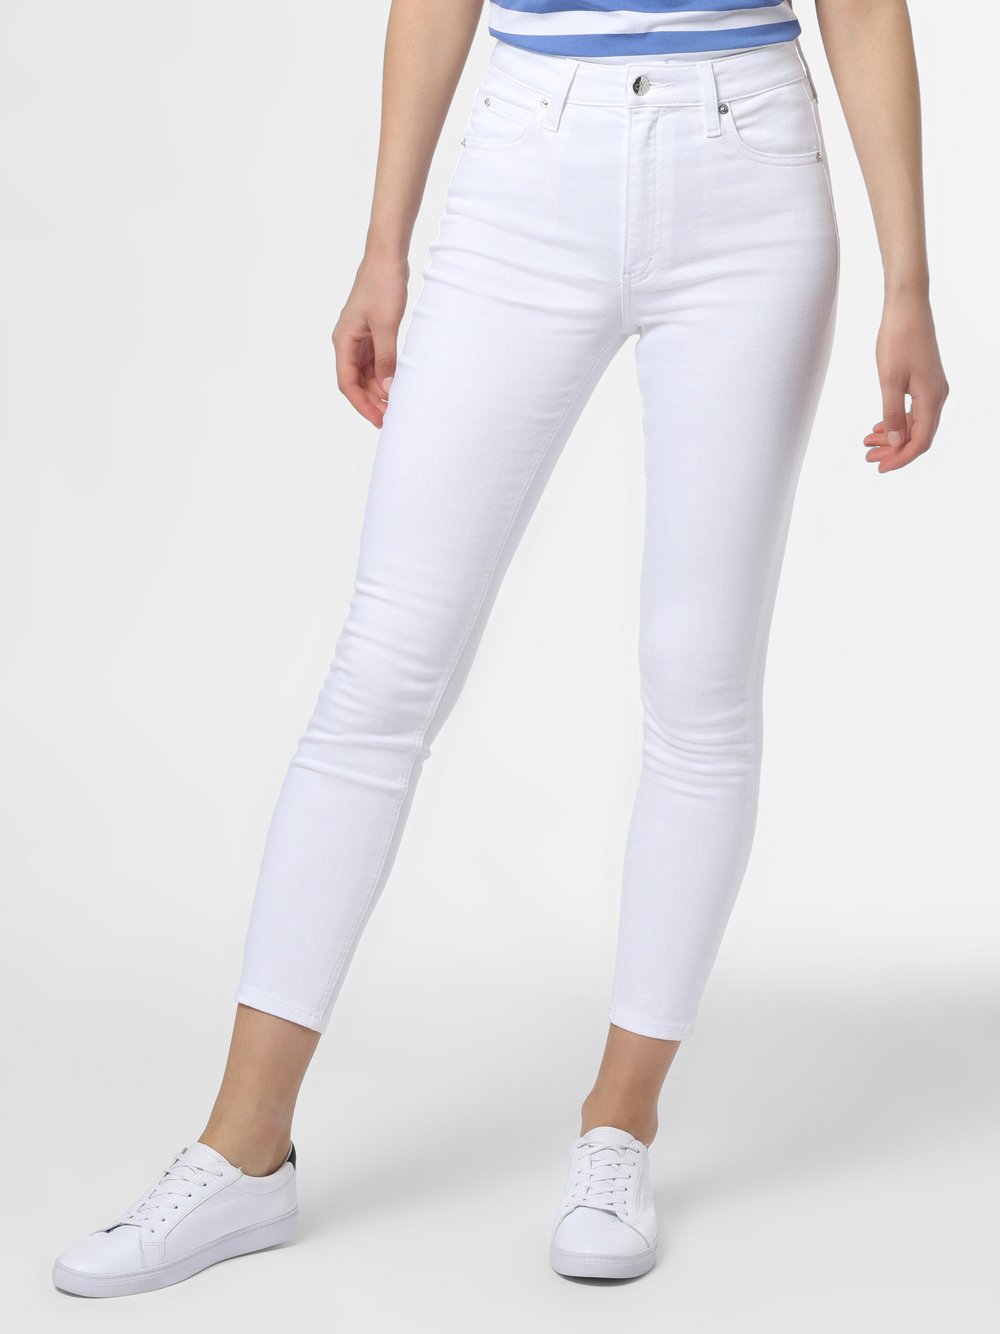 Calvin Klein Jeans - Jeansy damskie, biały